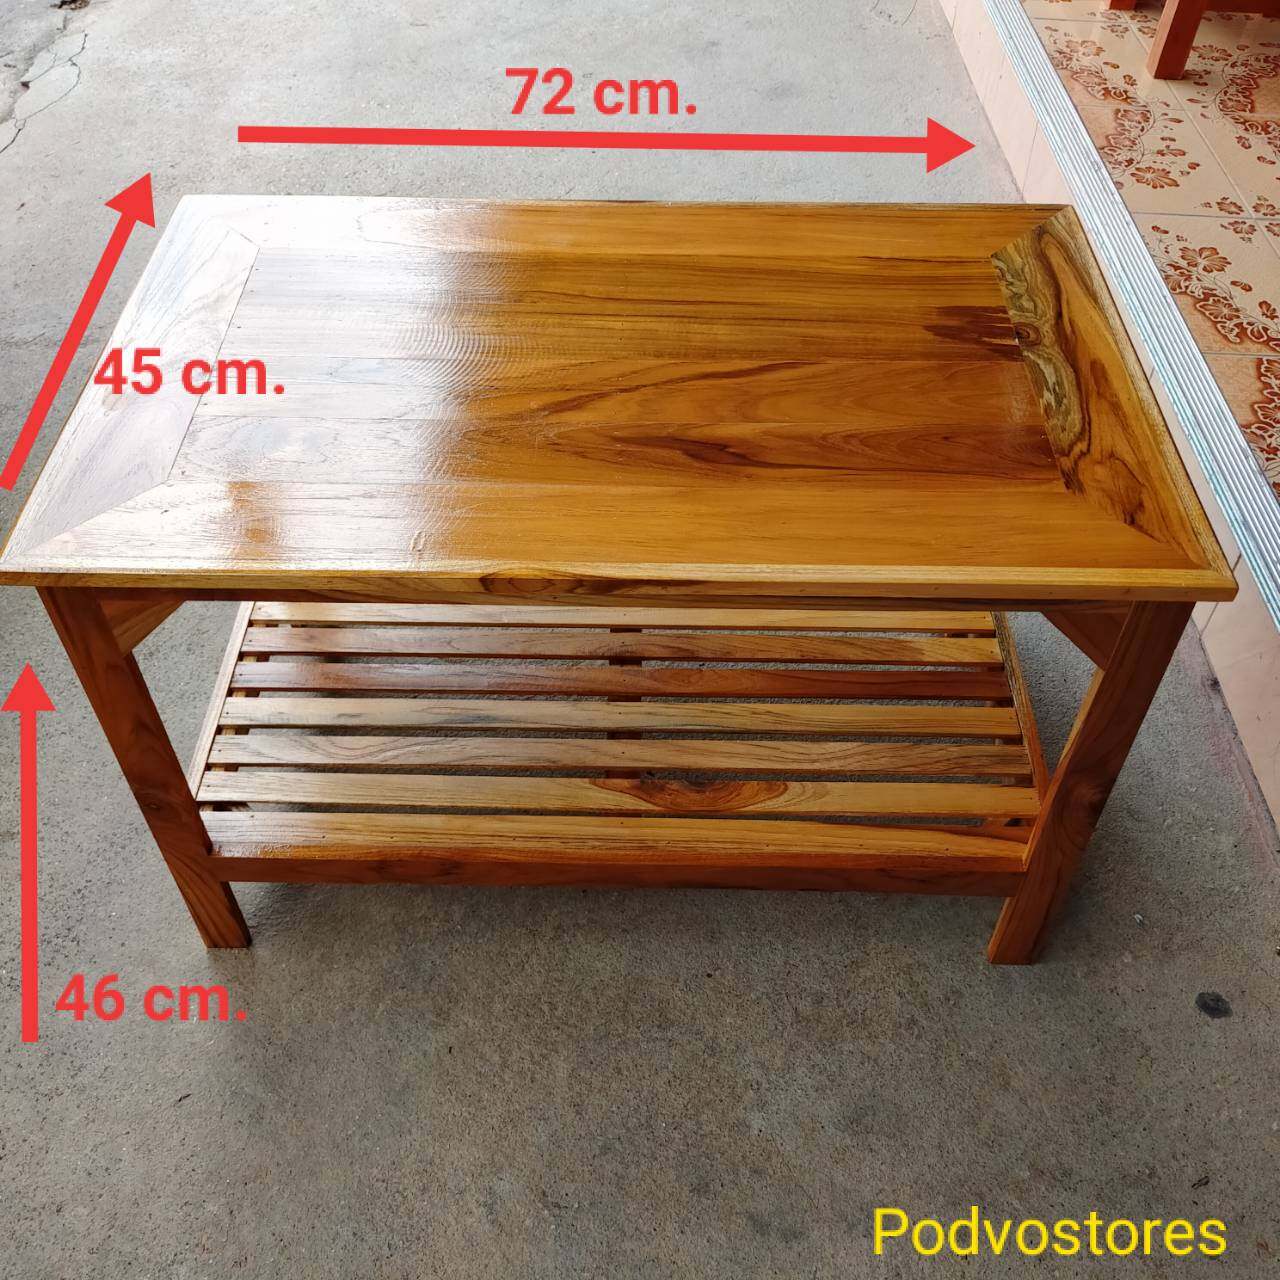 โต๊ะไม้สัก 2 ชั้น เคลือบแล็กเกอร์ (กว้าง 45 cm. ยาว 72 cm. สูง 46 cm.) โต๊ะทำจากไม้สักทอง โต๊ะญี่ปุ่น โต๊ะวางของ ที่วางของ โต๊ะตัวเตี้ย โต๊ะปิ๊กนิก โต๊ะขนาดเล็ก โต๊ะกลาง โต๊ะตัวเตี้ยๆ โต๊ะกินข้าว โต๊ะวางทีวี โต๊ะไม้ เฟอร์นิเจอร์ไม้